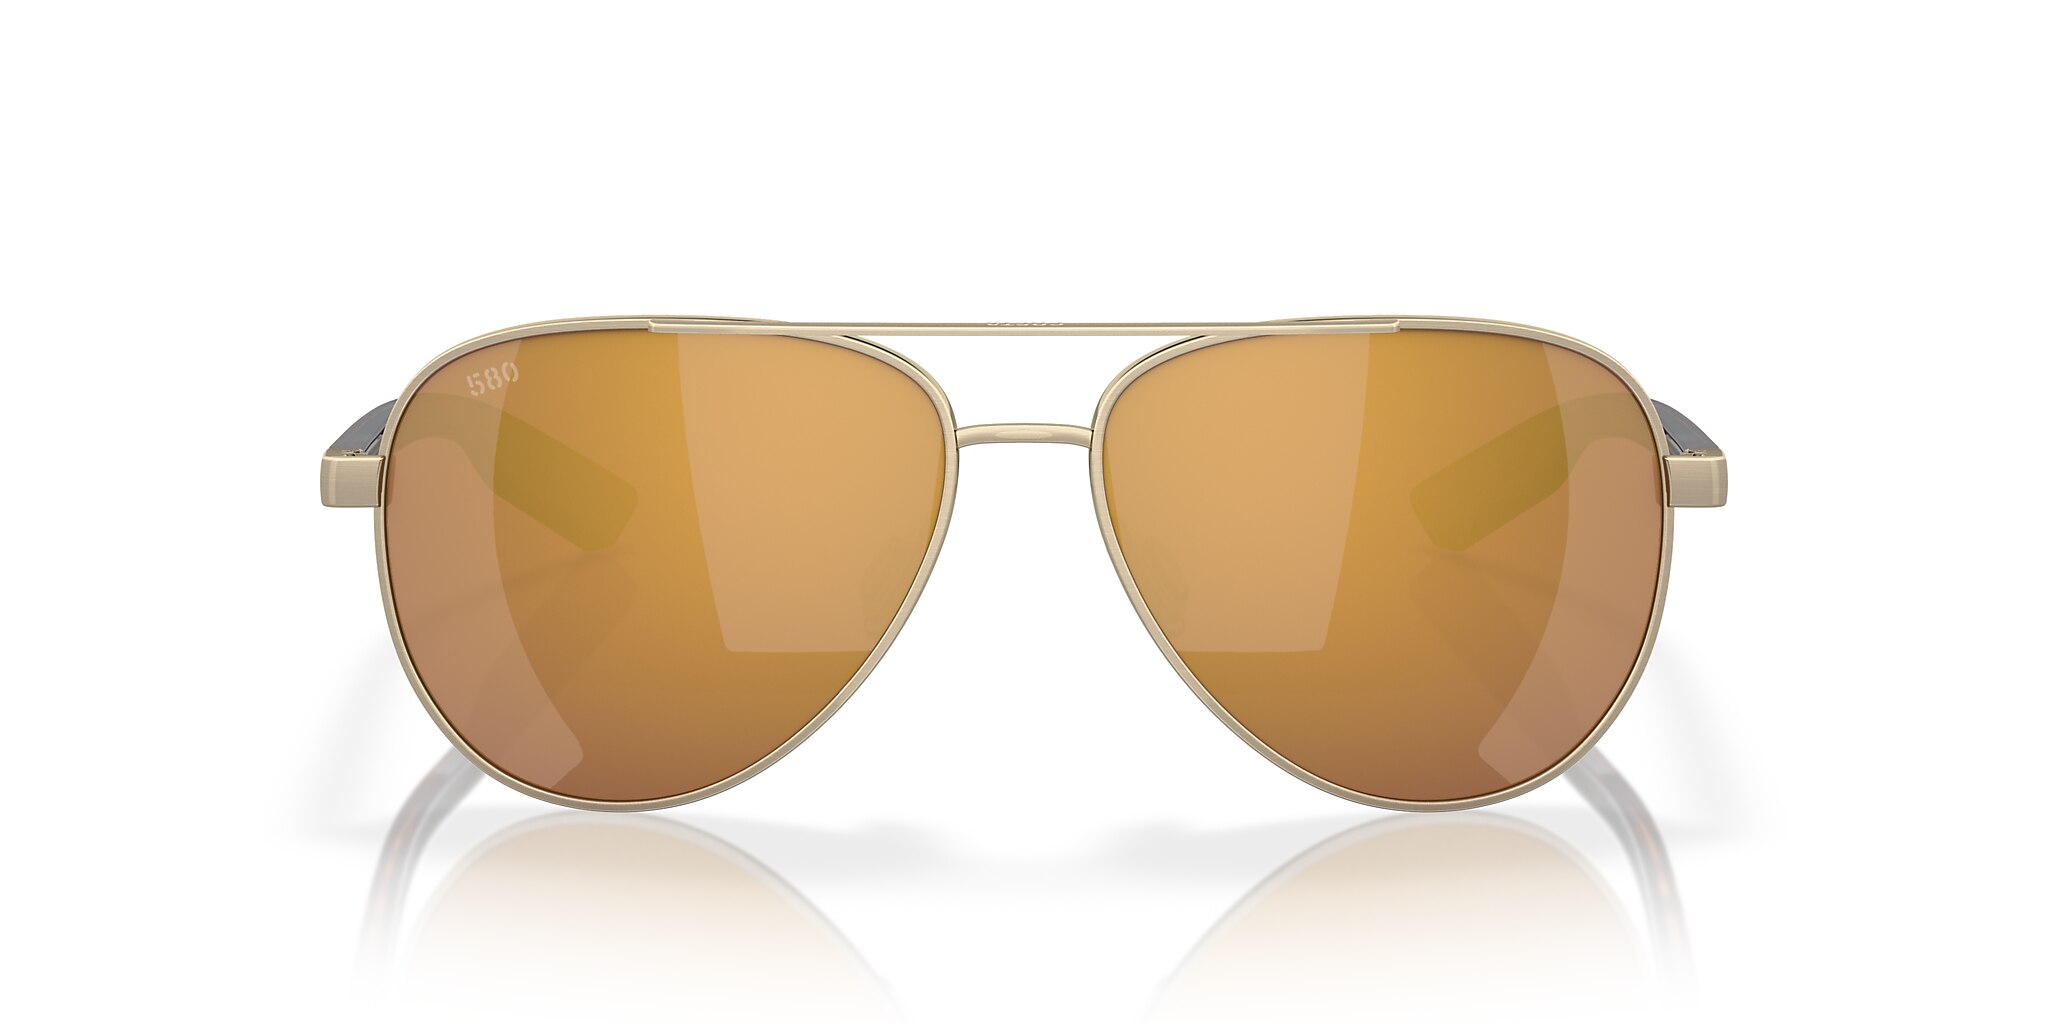 Peli Polarized Sunglasses in Gold Mirror | Costa Del Mar®